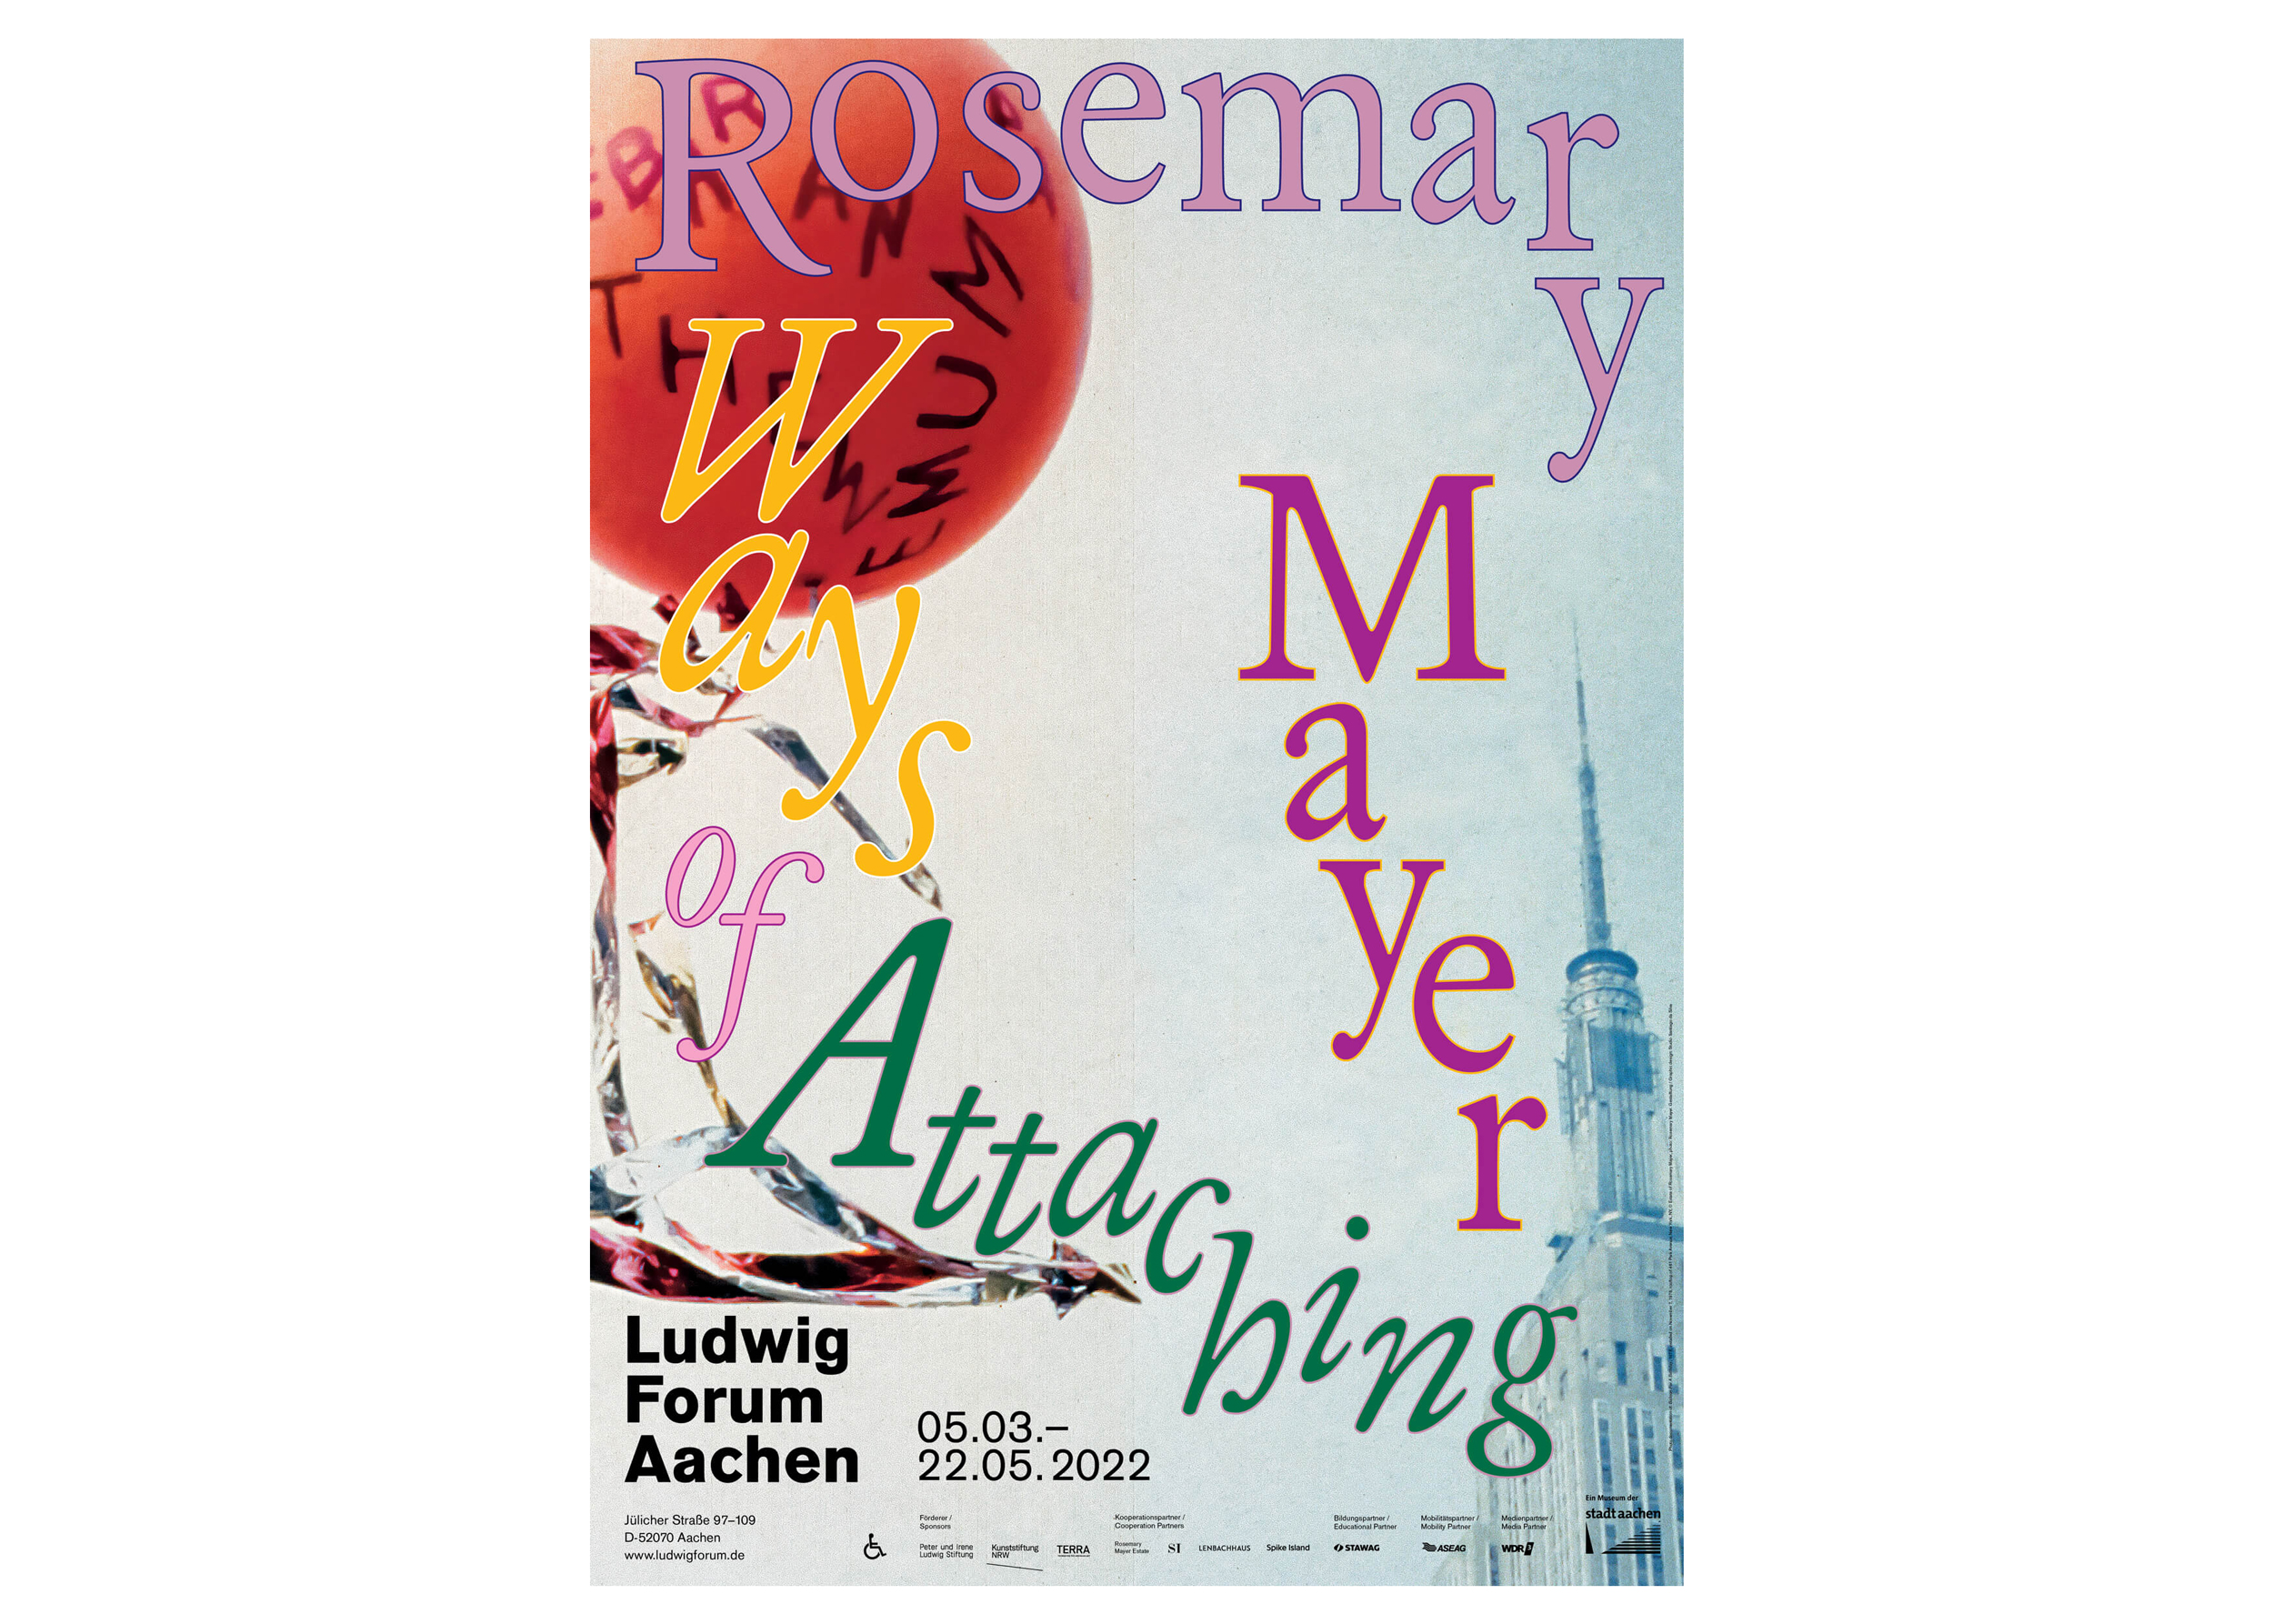 Rosemary Mayer Ways of Attaching